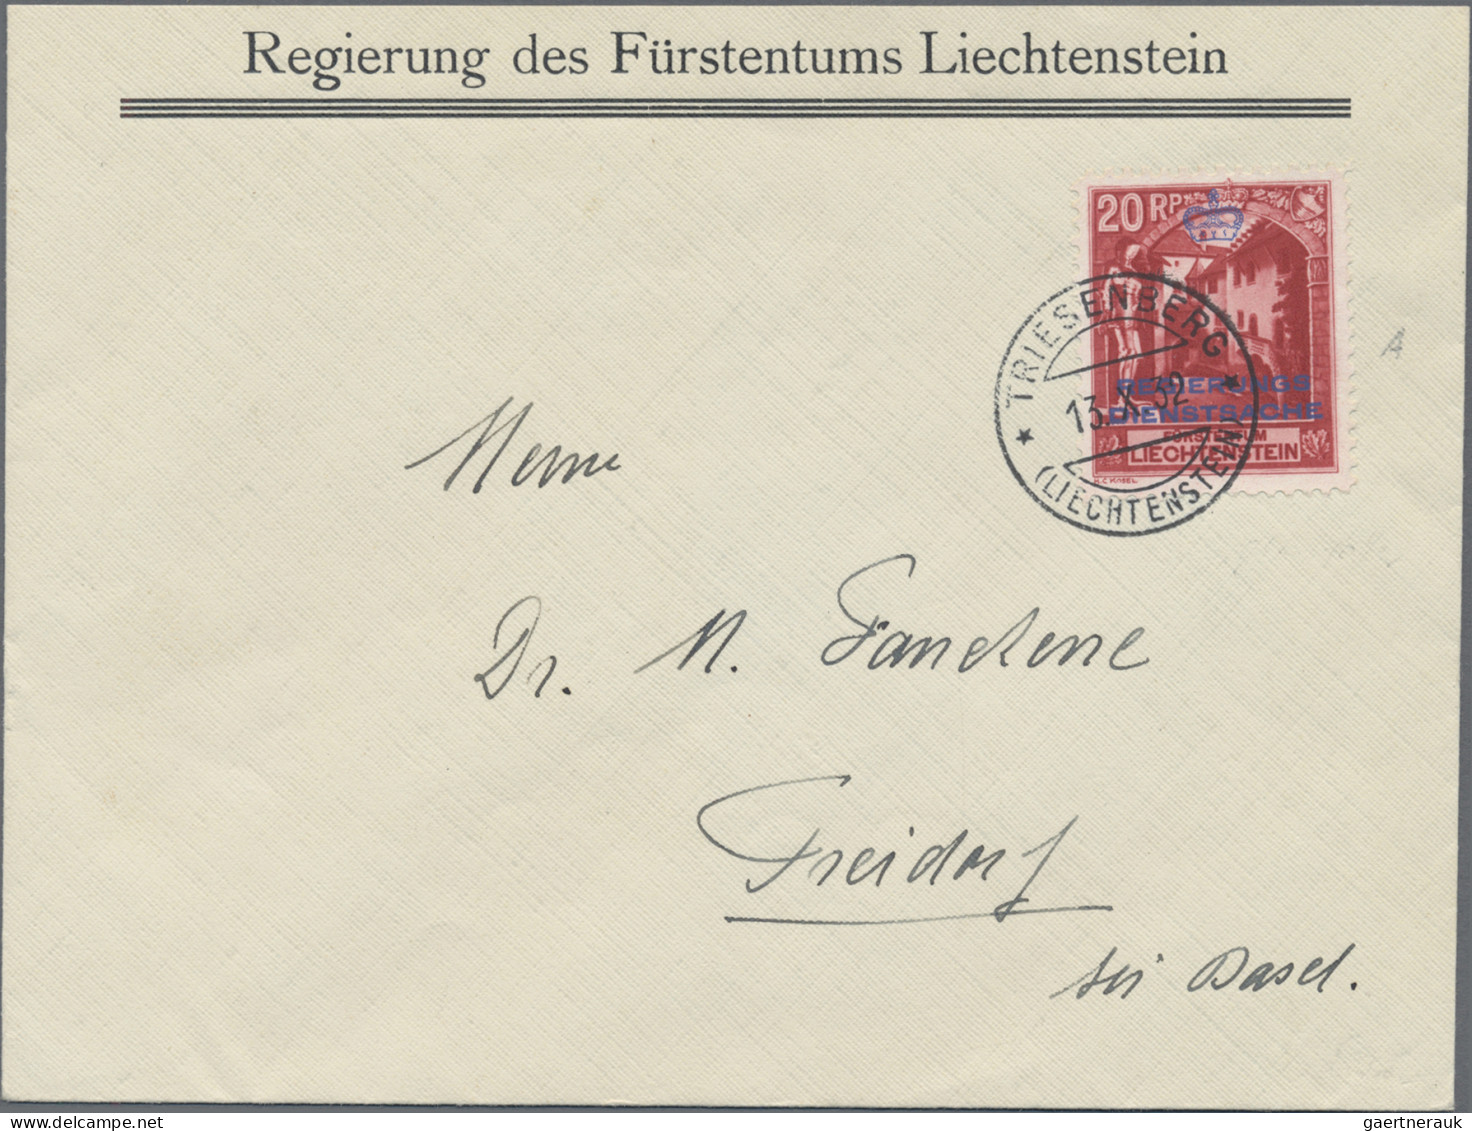 Liechtenstein - Dienstmarken: 1932/34, Dienstmarken 5(2), 10, 20 und 30 Rp. alle